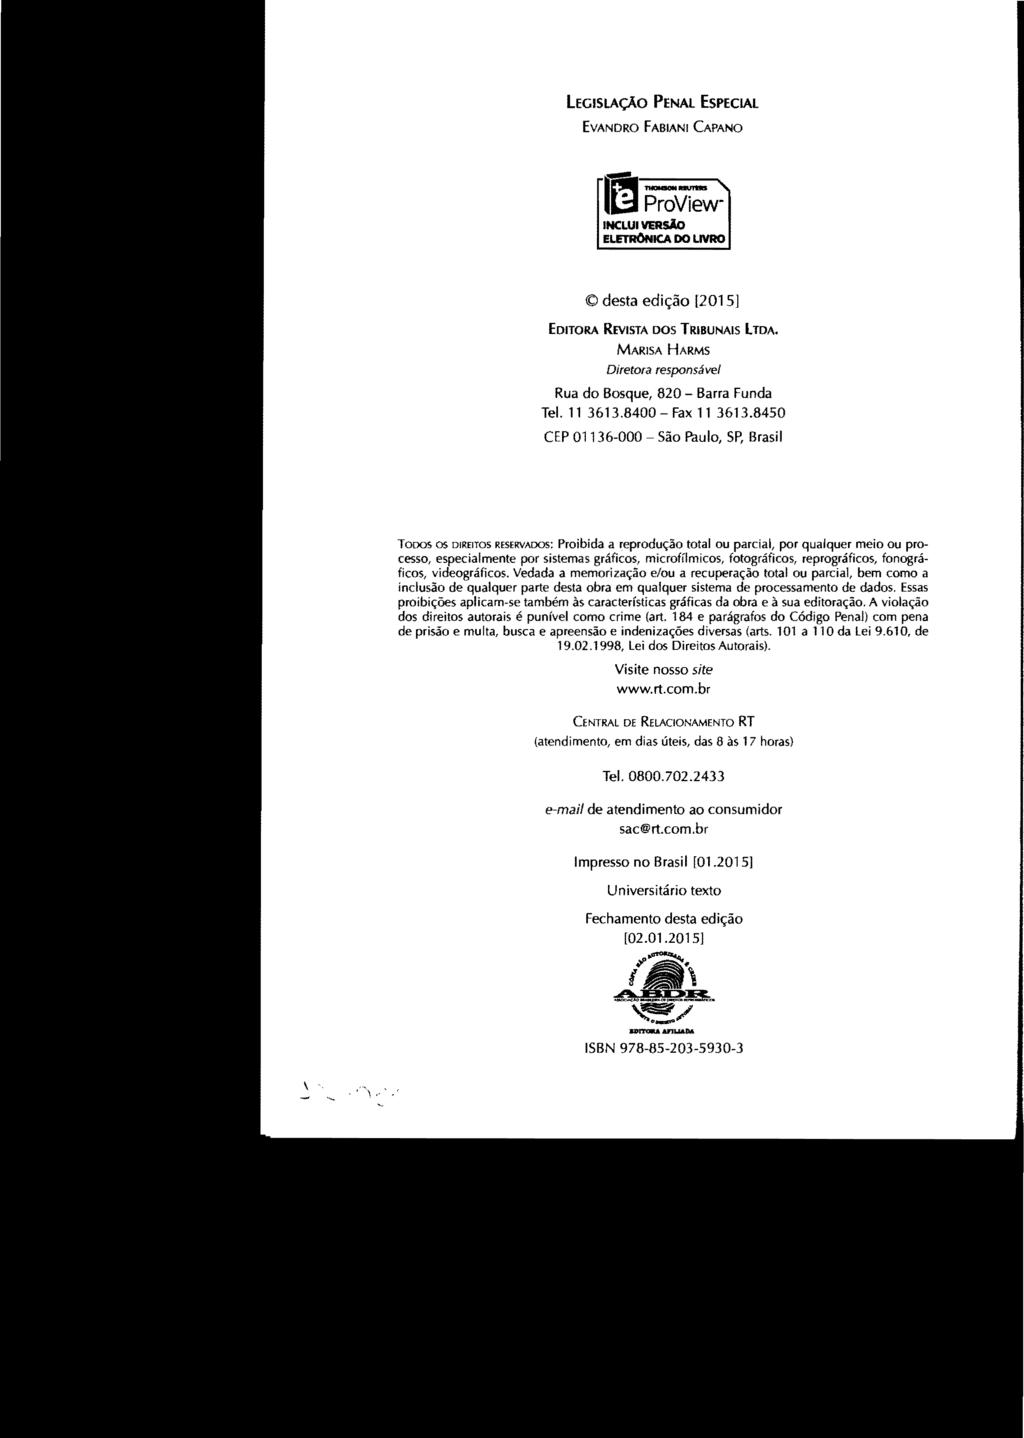 LEGISLAÇÃO PENAL ESPECIAL EVANDRO FABIANI CAPANO Imp;;v;w- INCLUI VERSÃO ELETRONICA DO LIVRO desta edição [2015] EDITORA REVISTA DOS TRIBUNAIS boa.